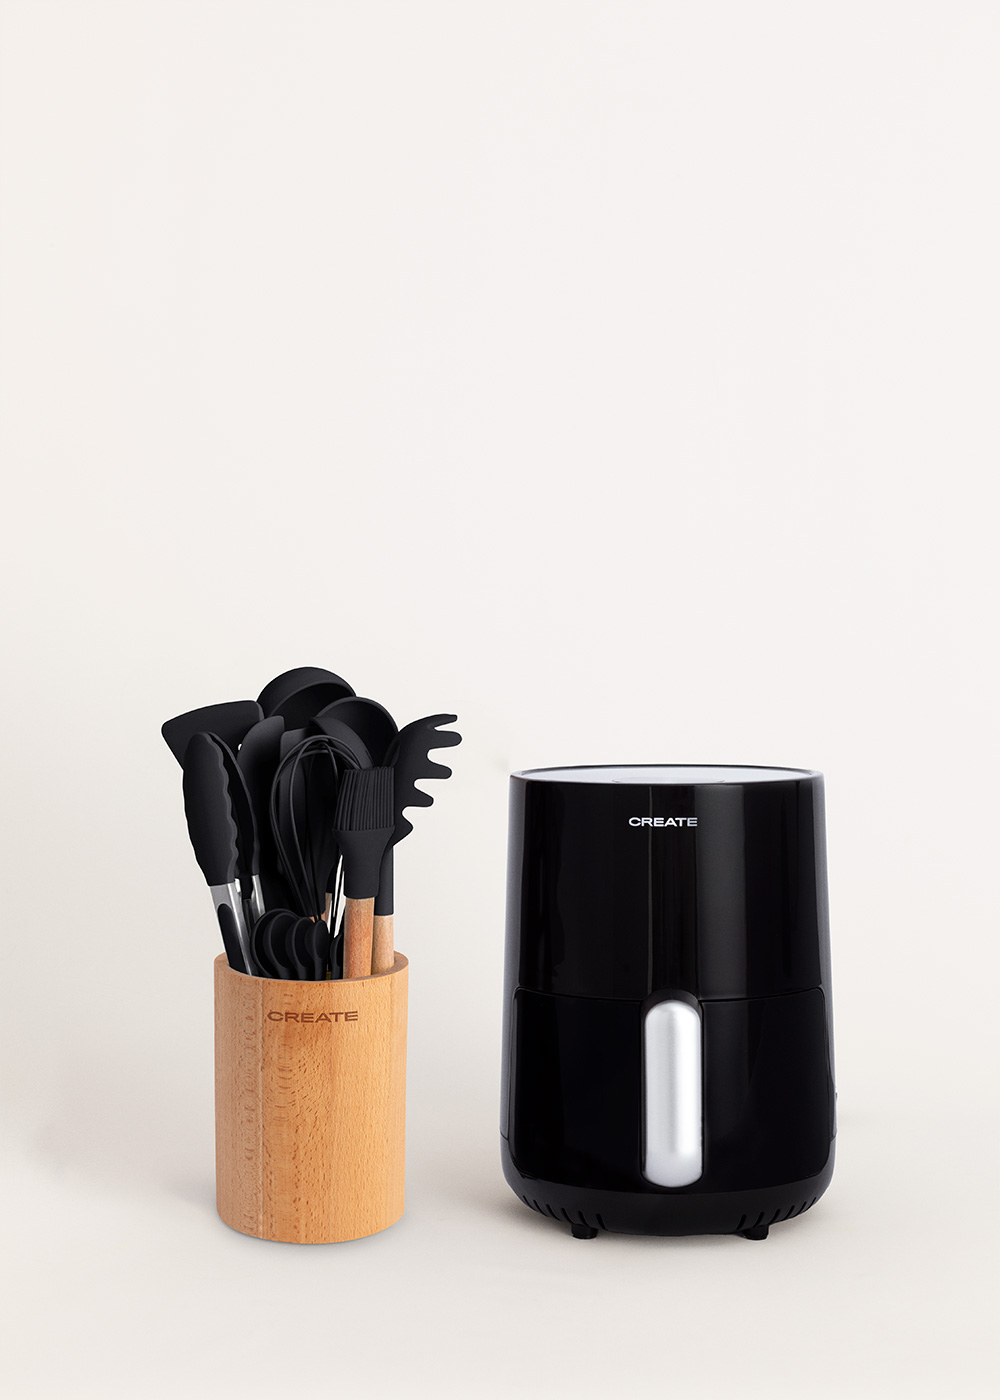 CREATE - Pack FRYER AIR PRO LARGE 6.2 L + Set de utensilios de cocina